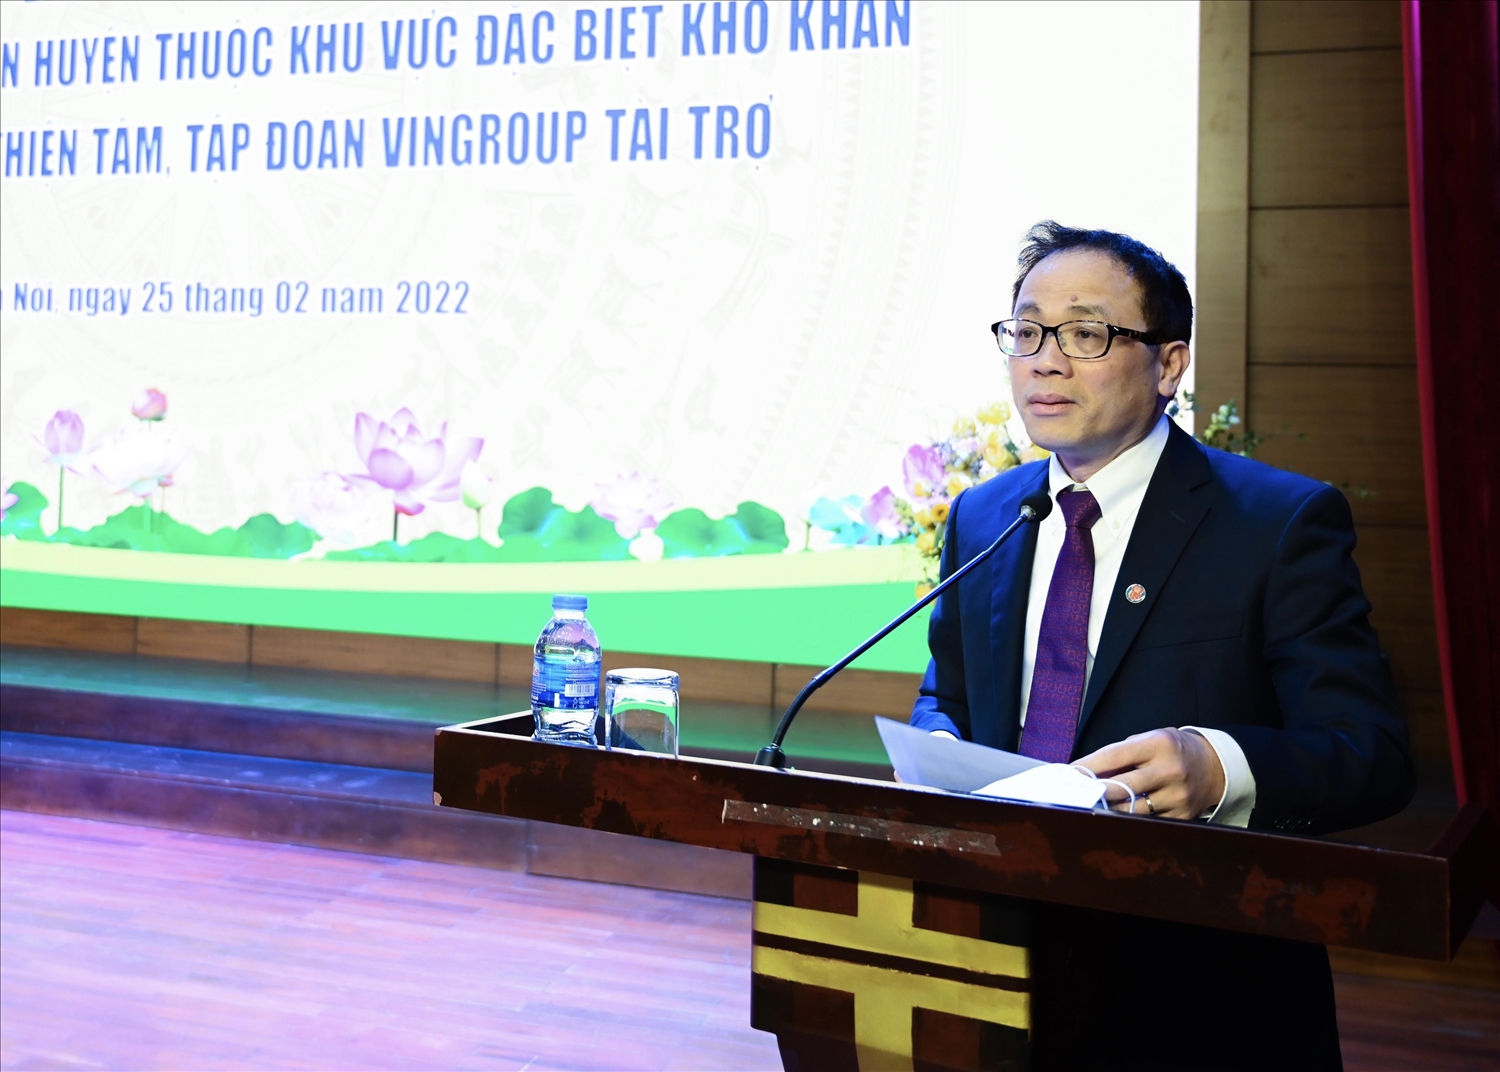 TS. Tạ Thành Văn, Chủ tịch Hội đồng Trường Đại học Y Hà Nội phát biểu tại Lễ khai giảng